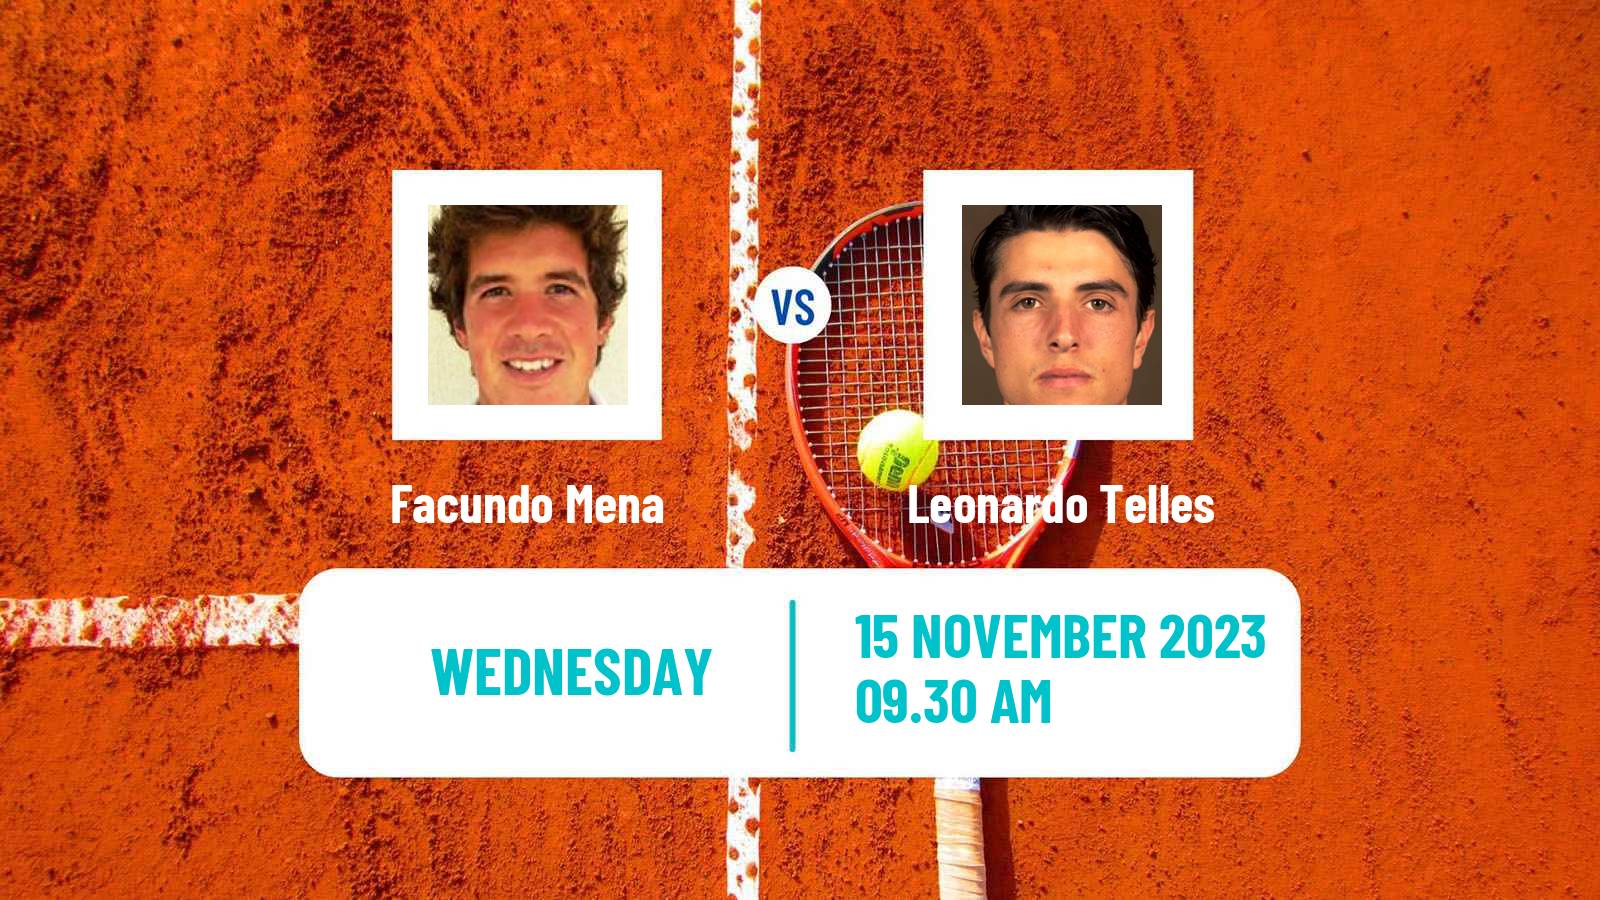 Tennis ITF M15 Santo Domingo 3 Men Facundo Mena - Leonardo Telles